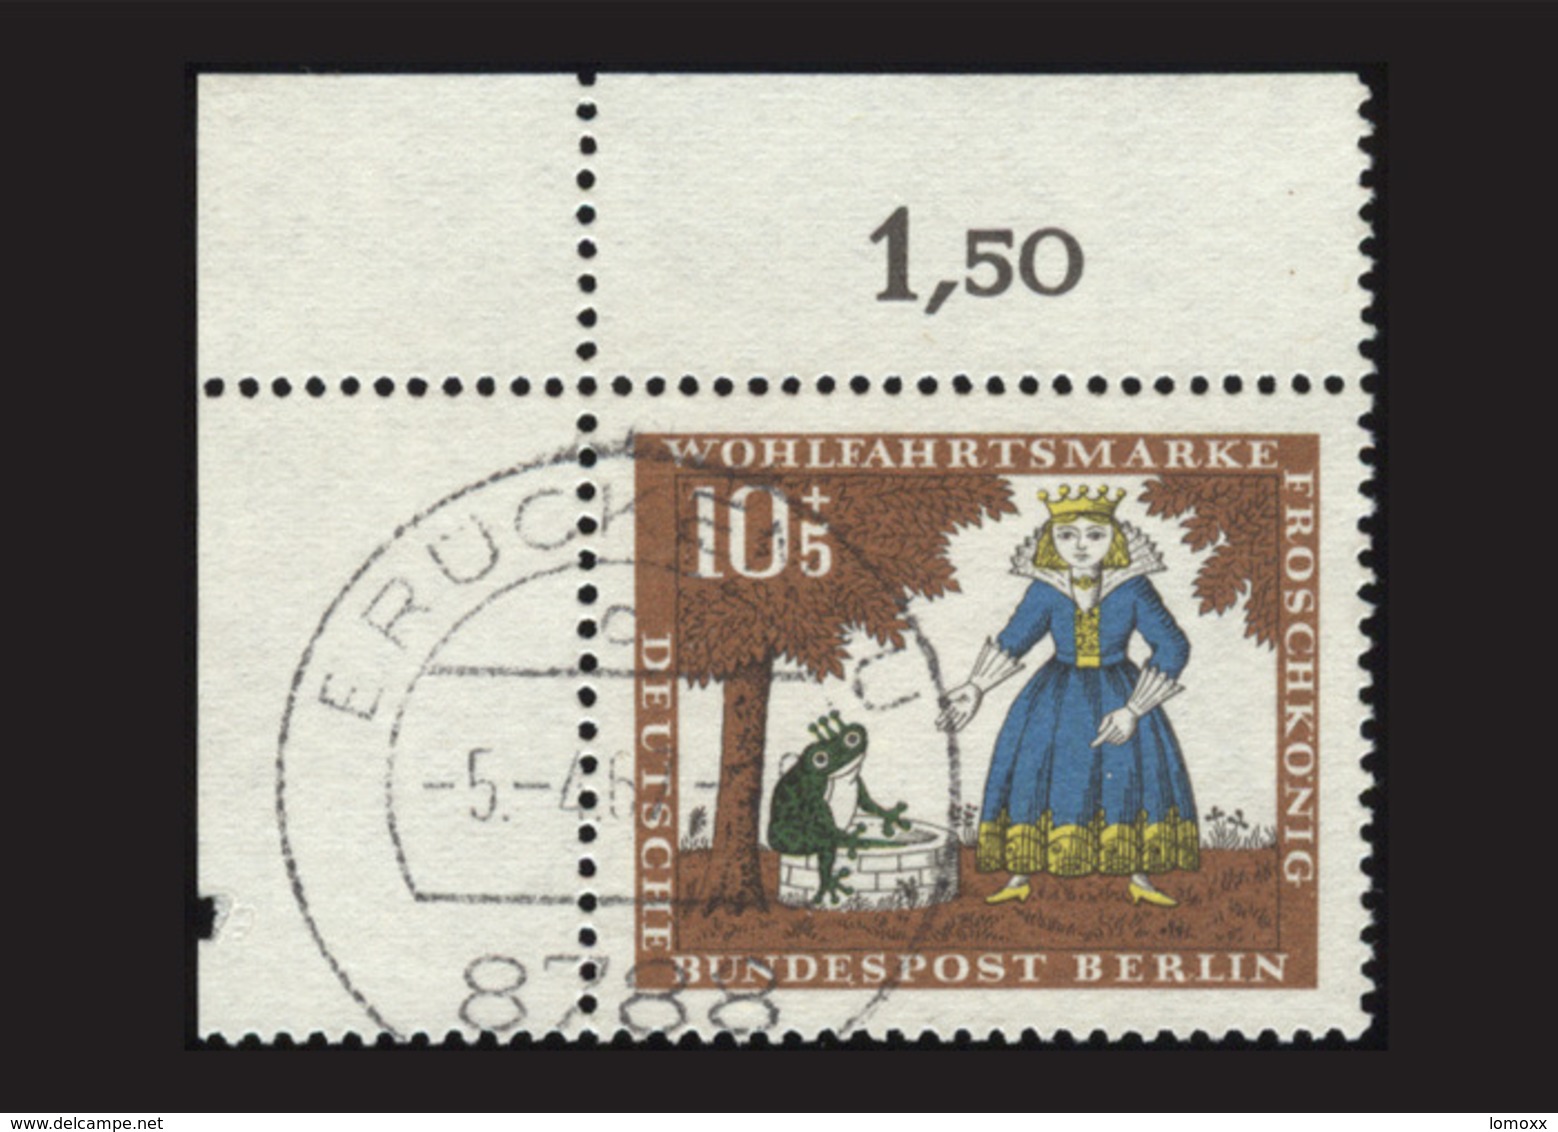 Berlin 1966, Michel-Nr. 295, Wohlfahrt 1966, 10 Pf., Eckrand Links Oben, Gestempelt - Oblitérés